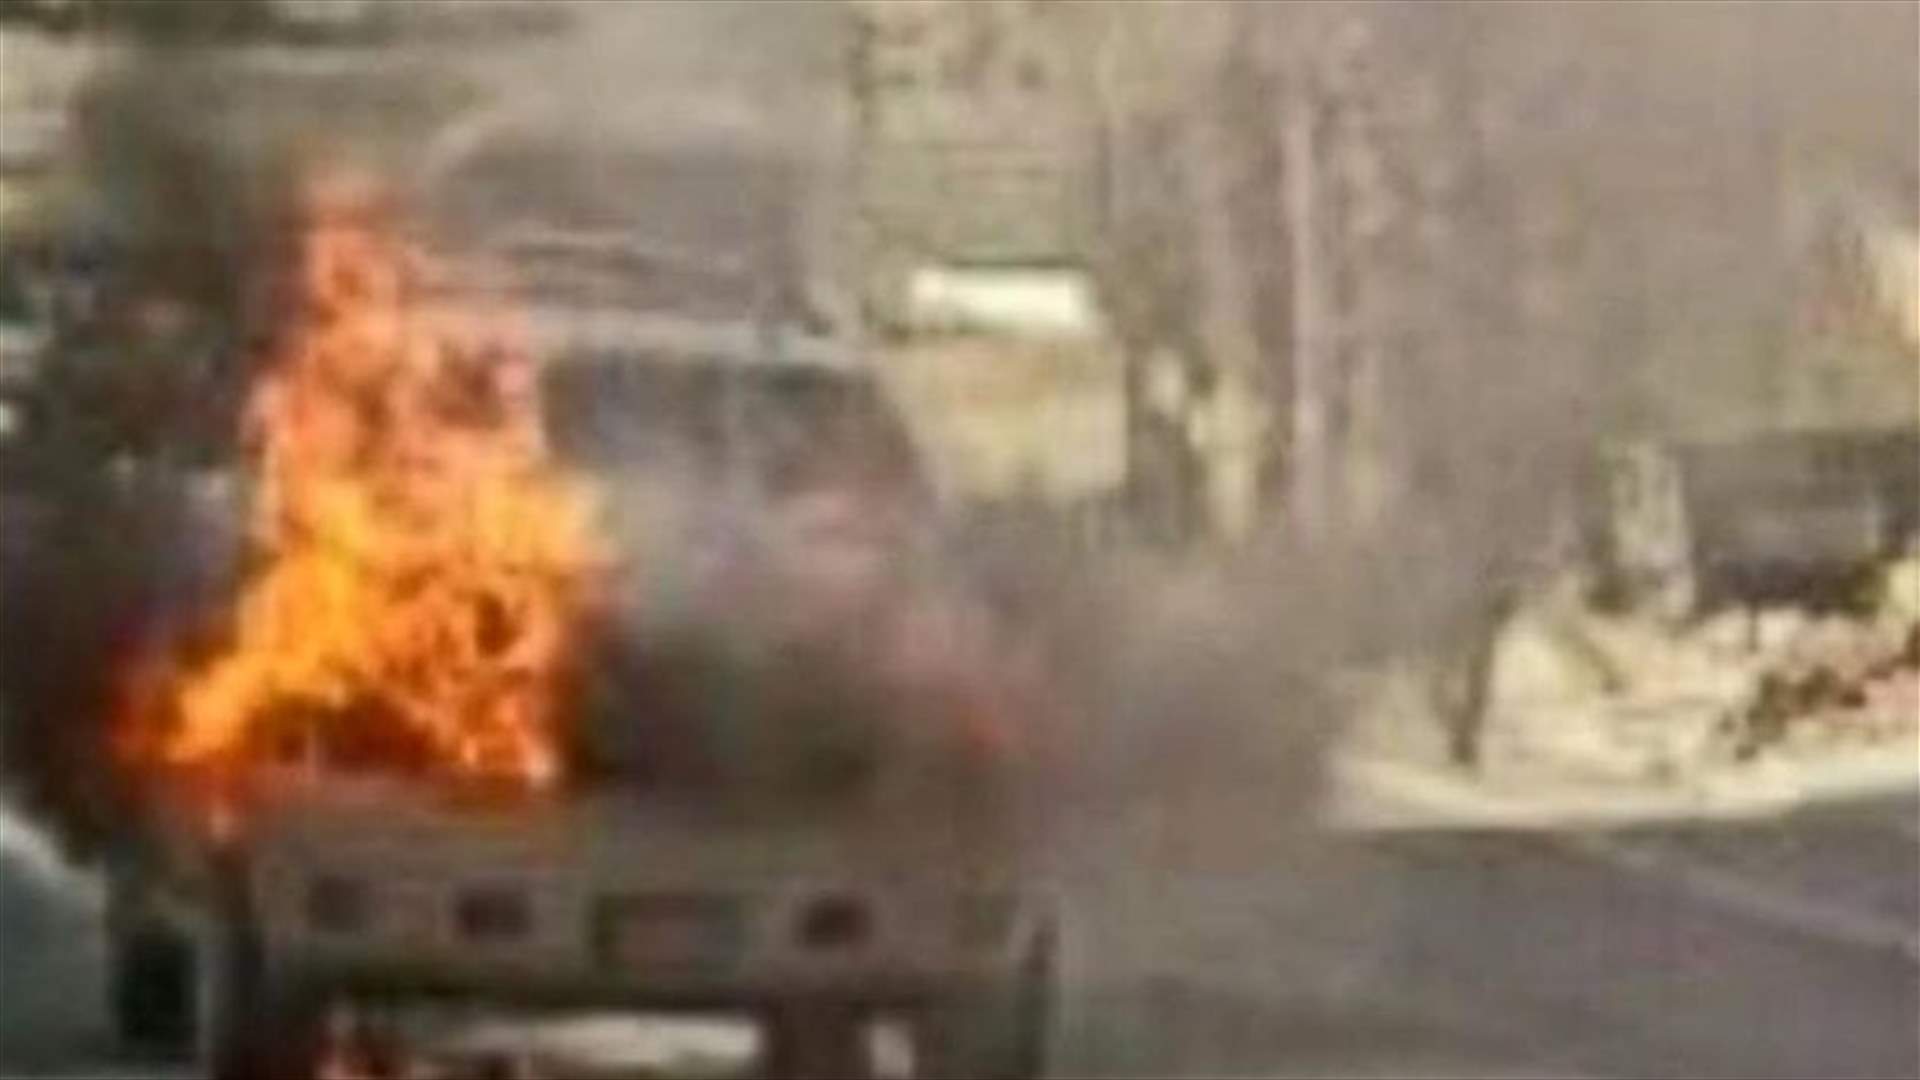 [PHOTOS] Ahmad Hariri’s car catches fire